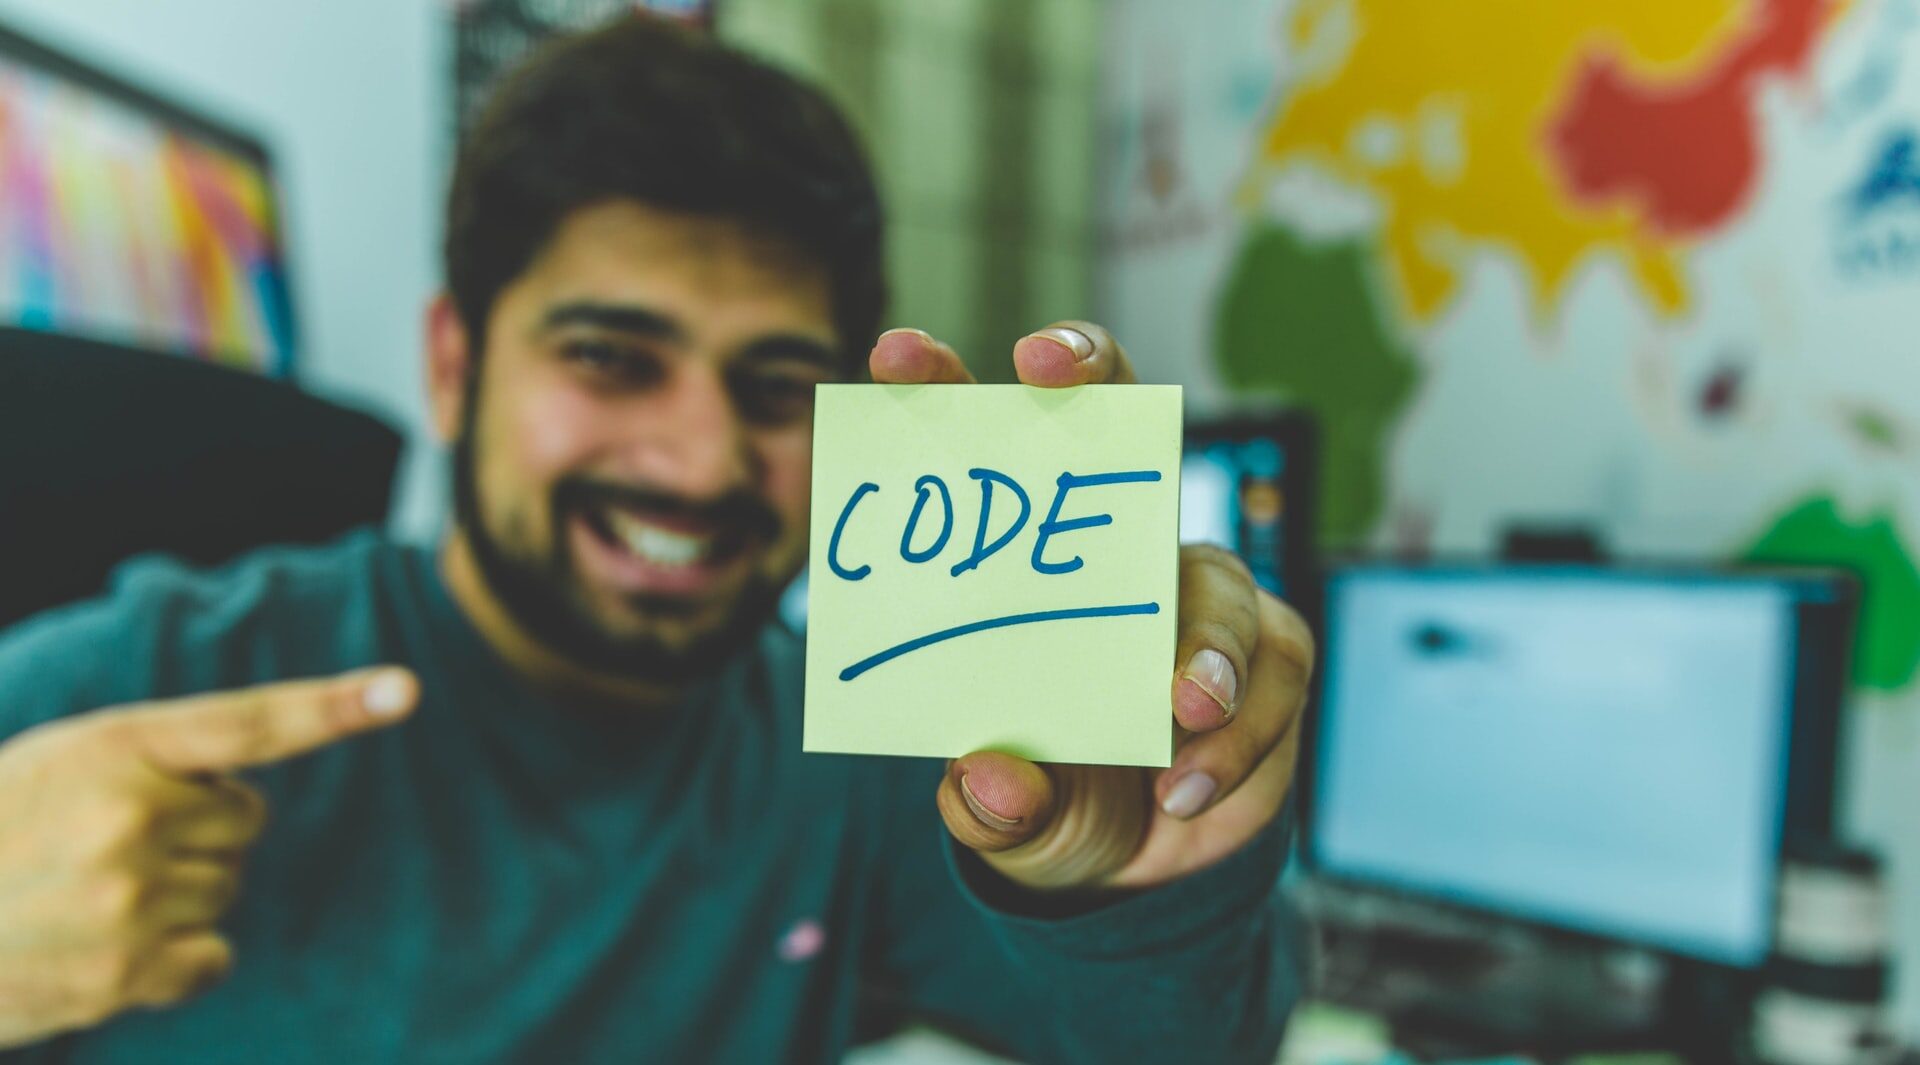 Desenvolvedor apontando orgulhosamente para a palavra CODE, ilustrando o artigo sobre Dia do Programador